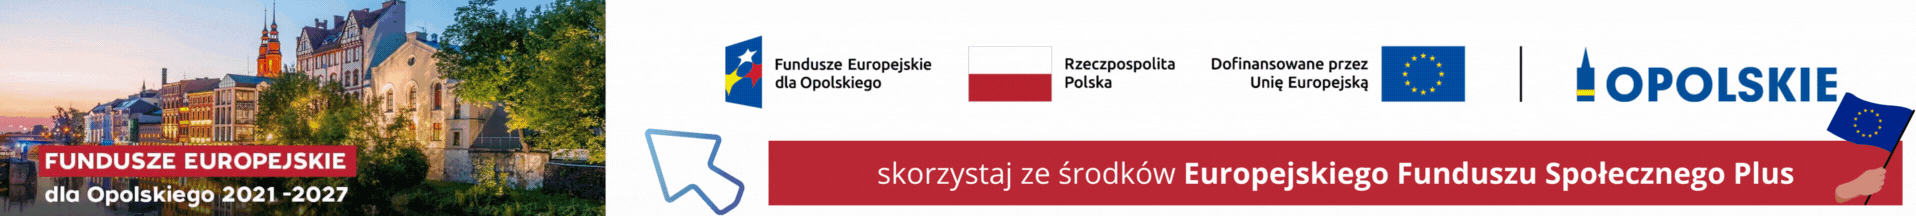 Baner Fundusze Europejskie dla Opolskiego 2021-2027